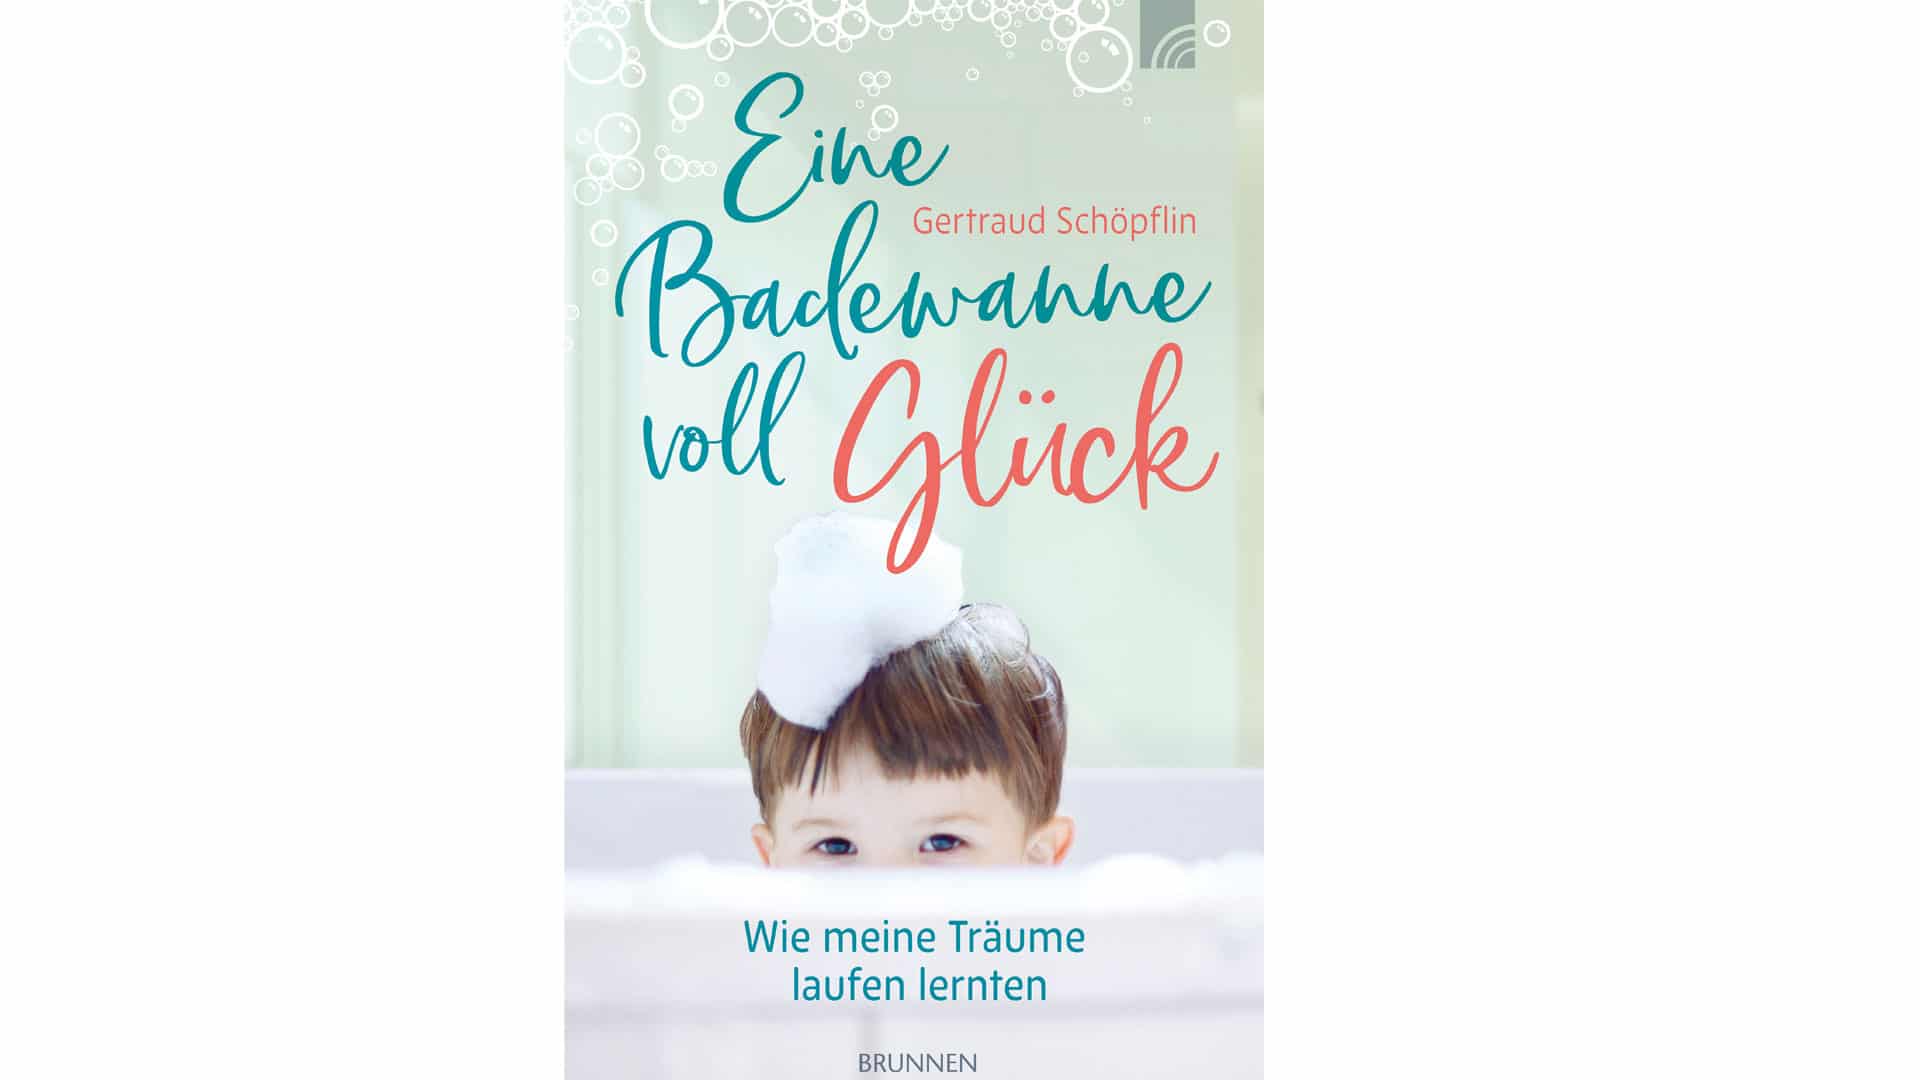 Das Buch „Eine Badewanne voll Glück“ ist im Brunnen-Verlag erschienen